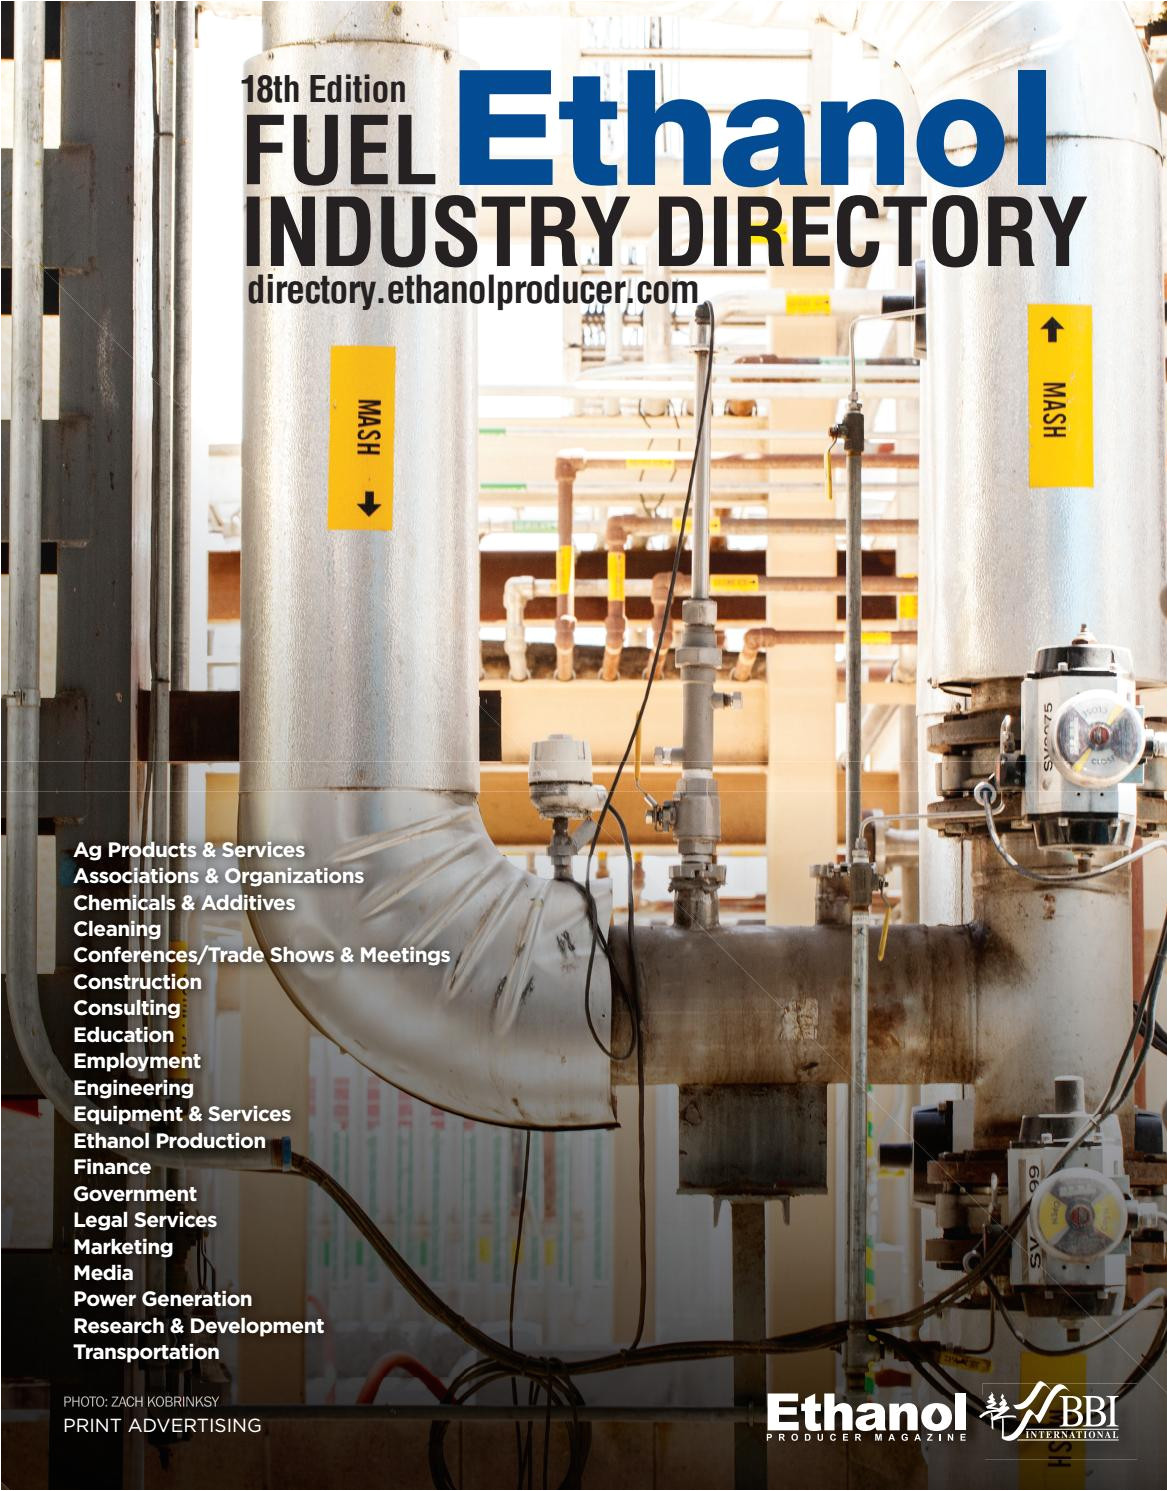 fuel ethanol industry directory 2018 18th edition by bbi international issuu